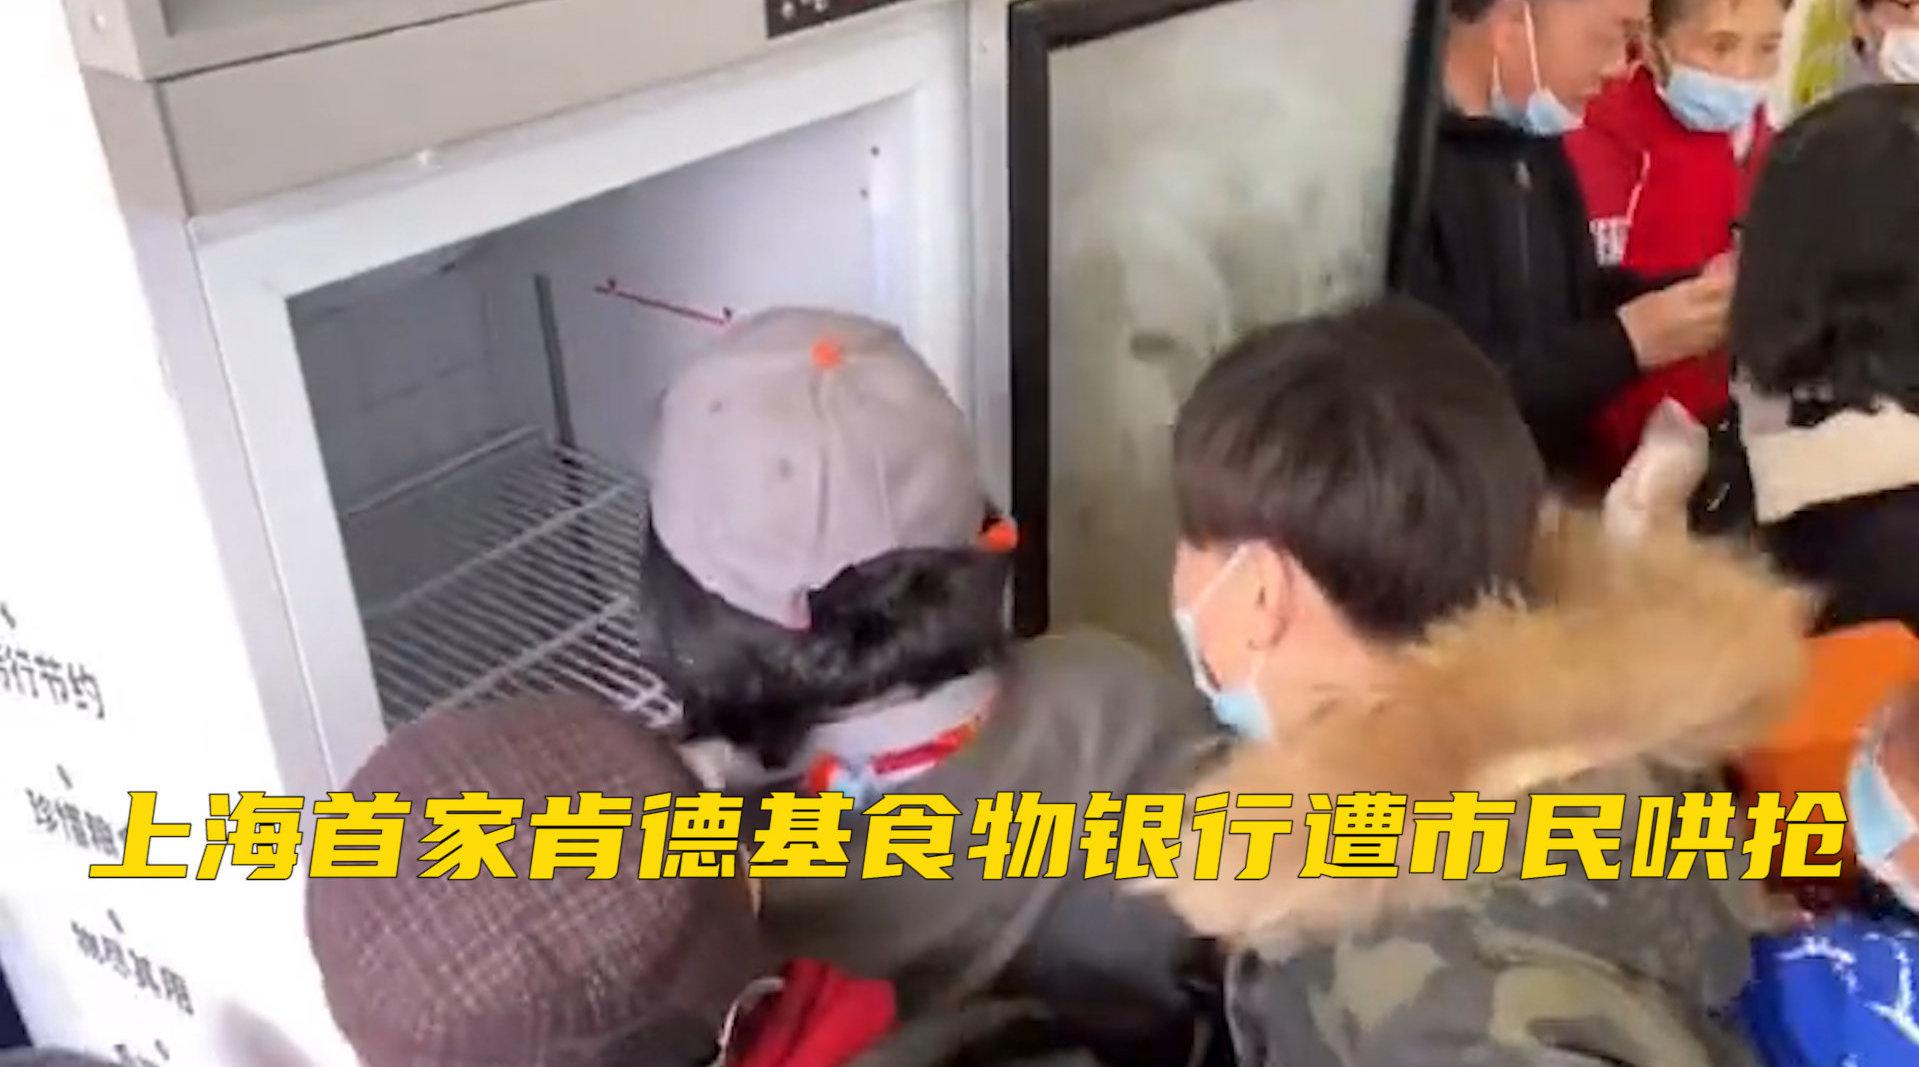 上海肯德基“食物银行”发放免费炸鸡，引市民哄抢